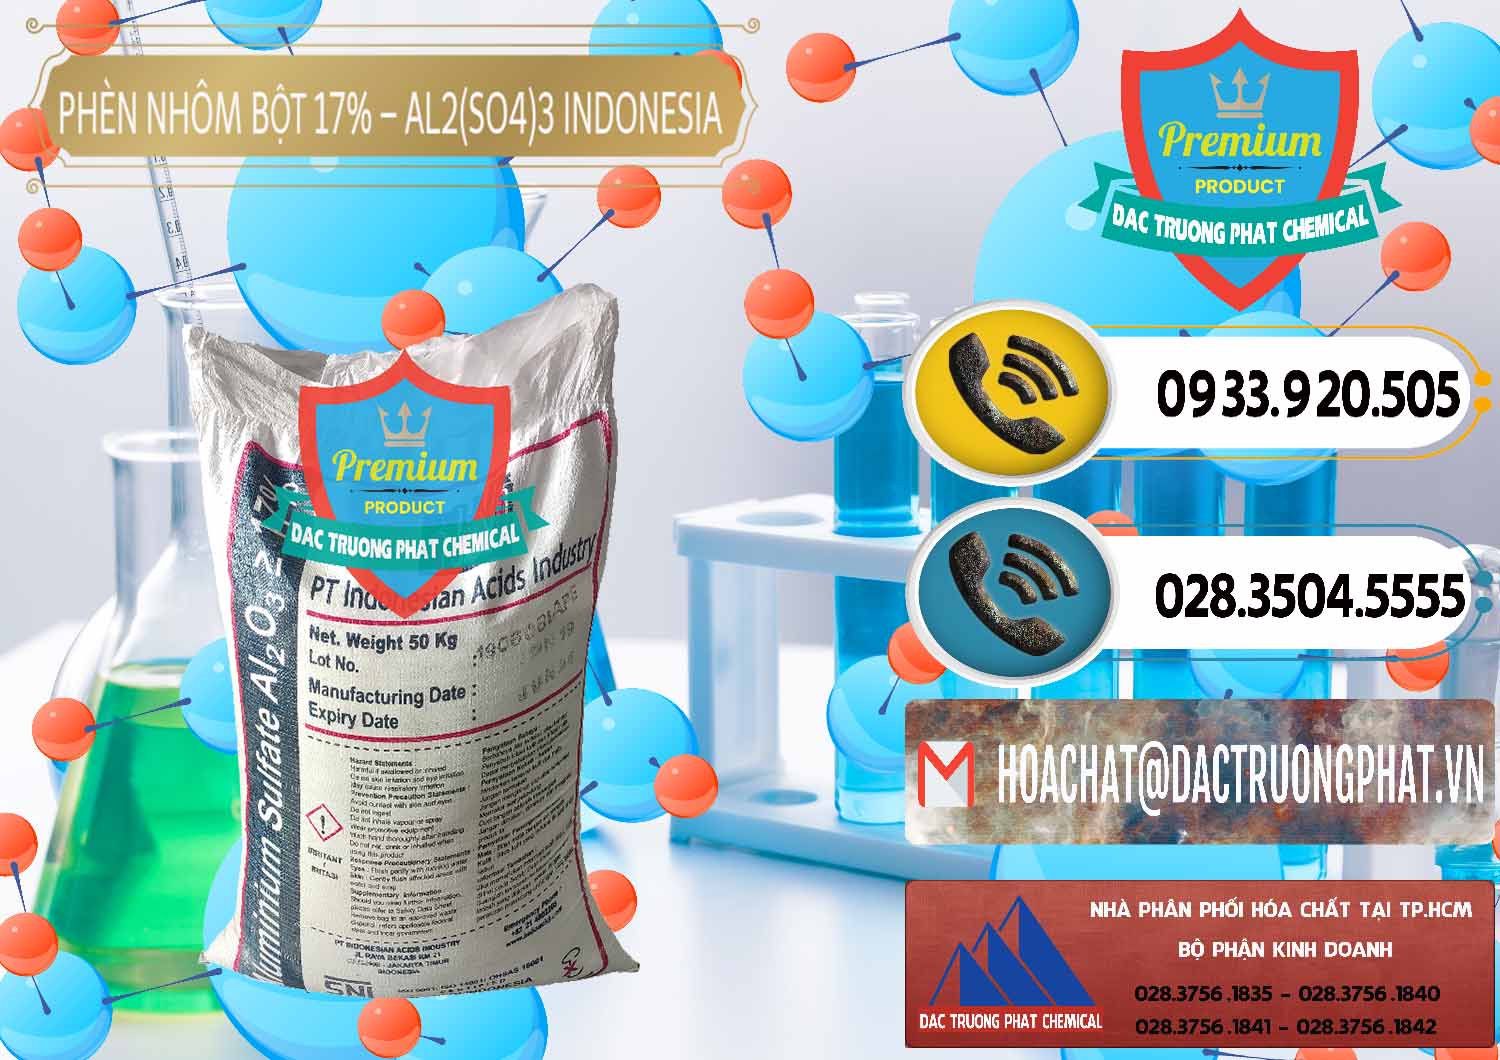 Cty bán và cung ứng Phèn Nhôm Bột - Al2(SO4)3 17% bao 50kg Indonesia - 0112 - Nơi chuyên kinh doanh & cung cấp hóa chất tại TP.HCM - hoachatdetnhuom.vn